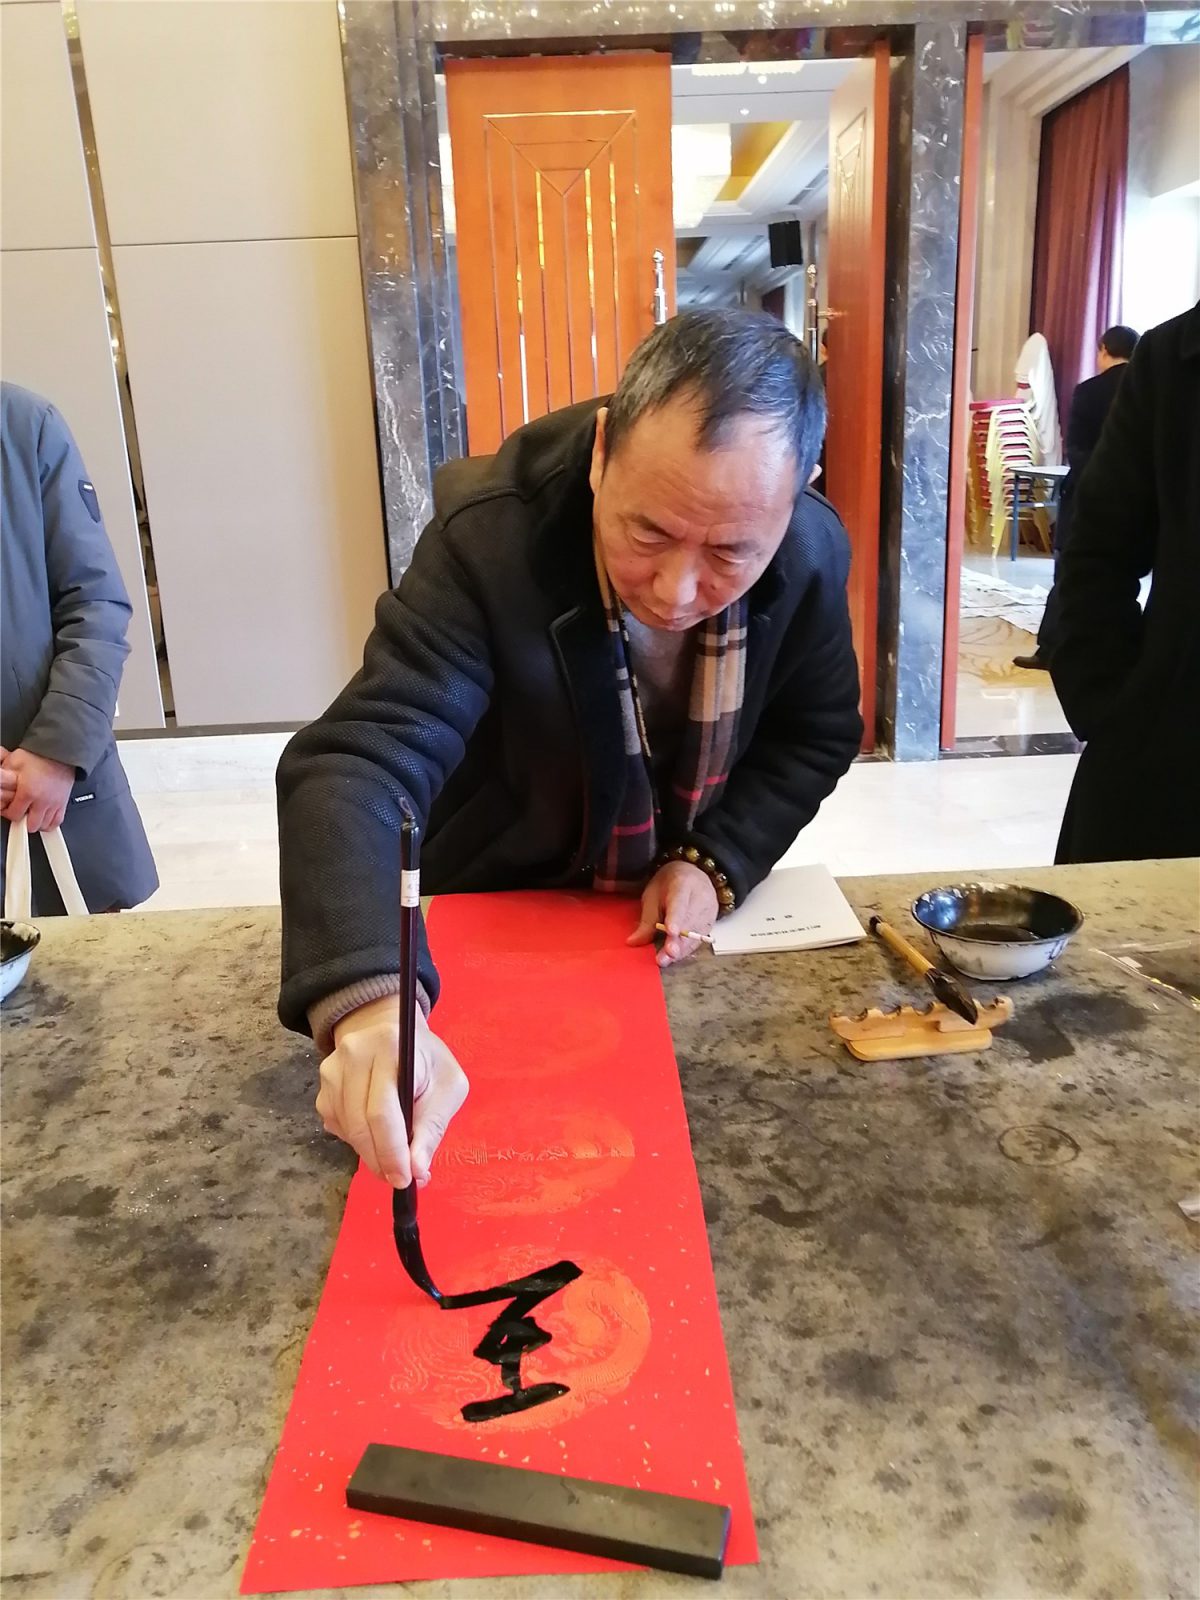 都江堰市书法家协会举行2019年终总结会